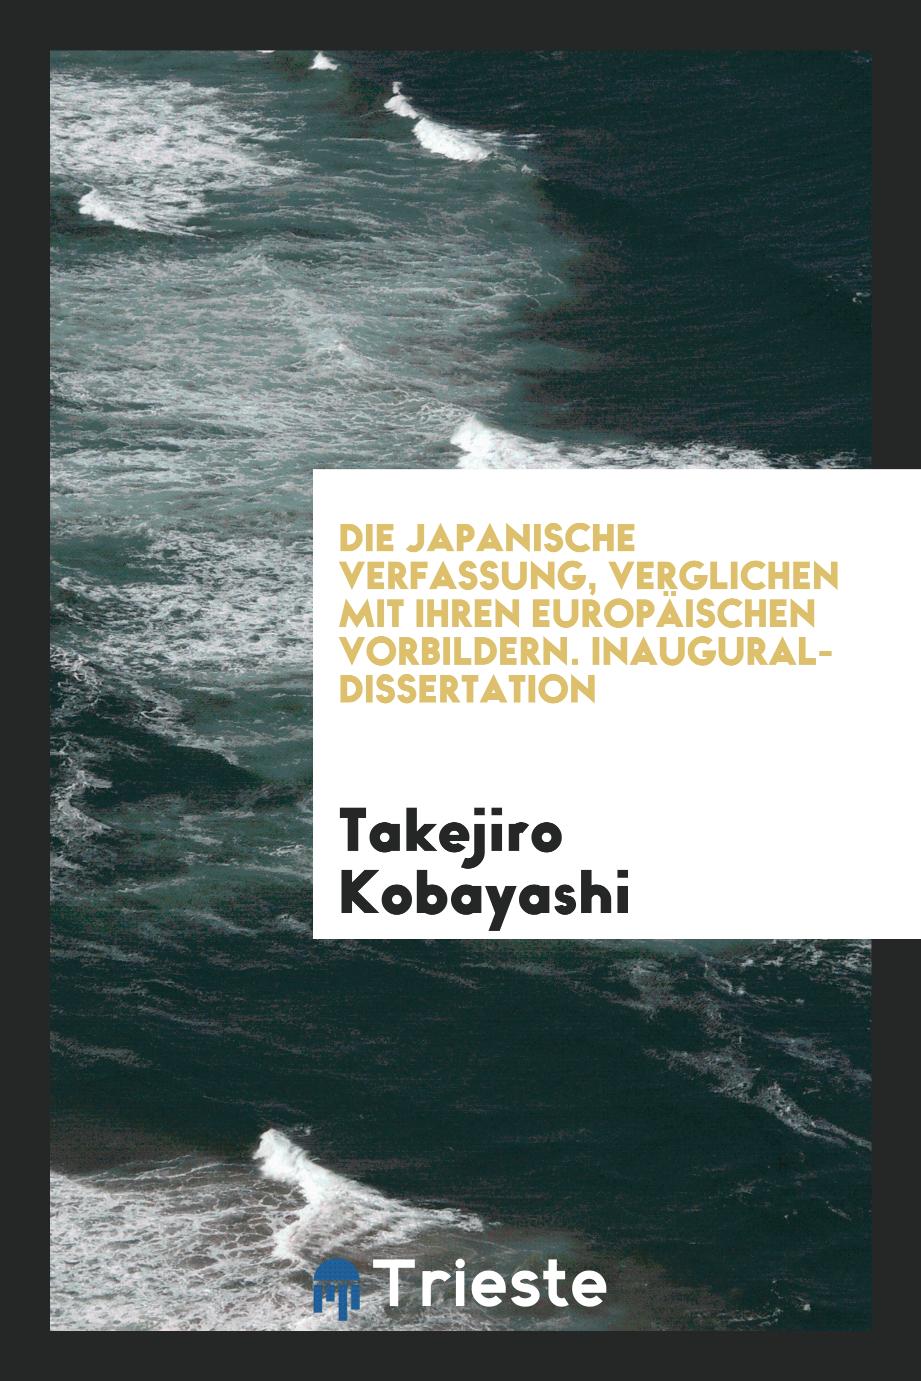 Die Japanische Verfassung, Verglichen mit Ihren EuropäIschen Vorbildern. Inaugural-Dissertation